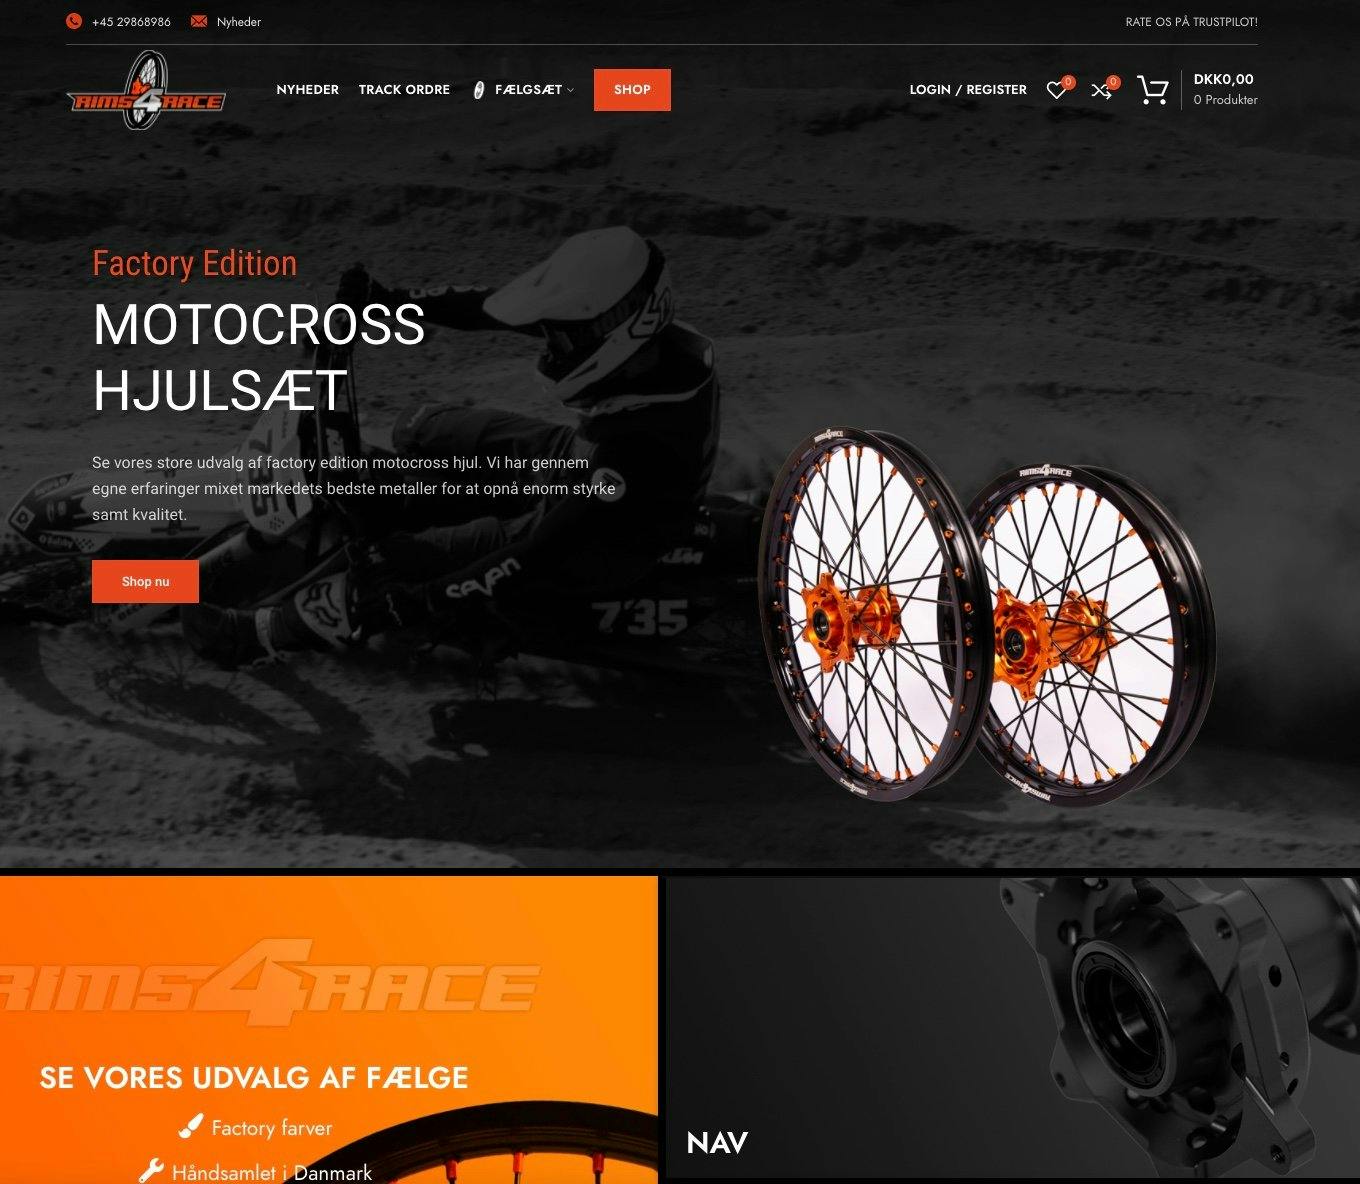 Webshop med Motorcykel fælge til salg! - Omsat for: 12.400 DKK